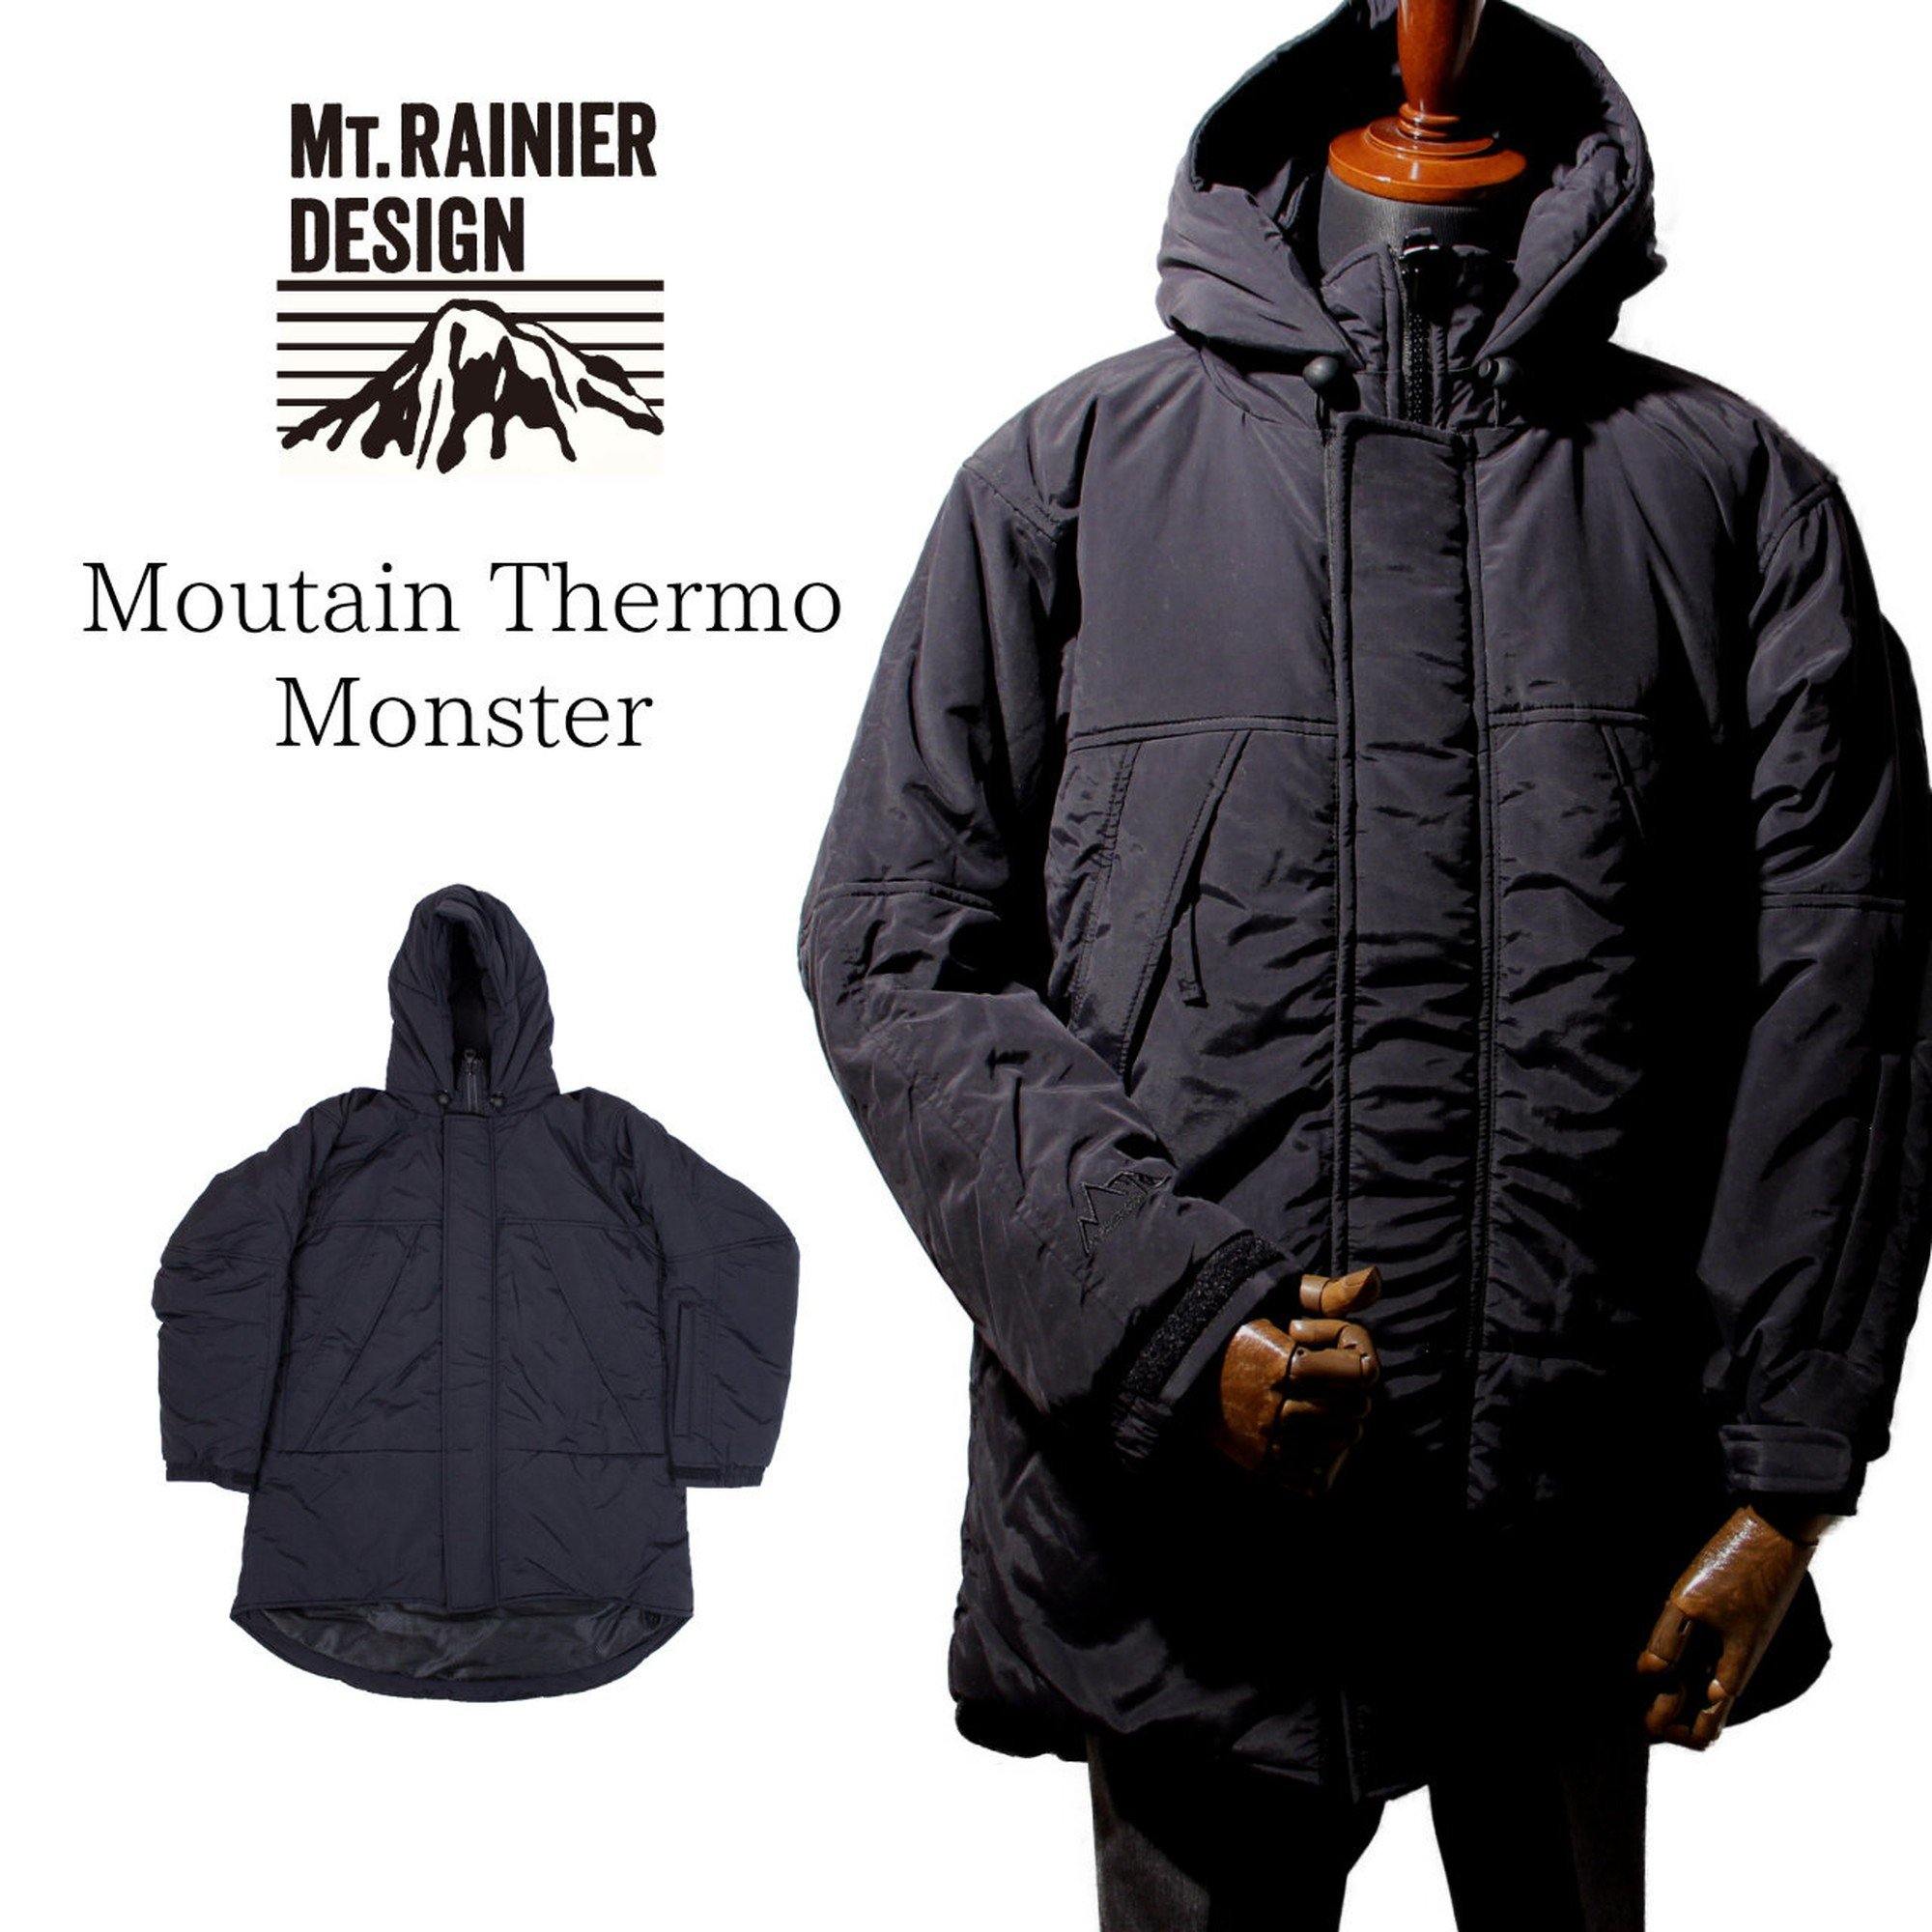 MT.RAINIER MOUNTAIN THERMO MONSTER ジャケット